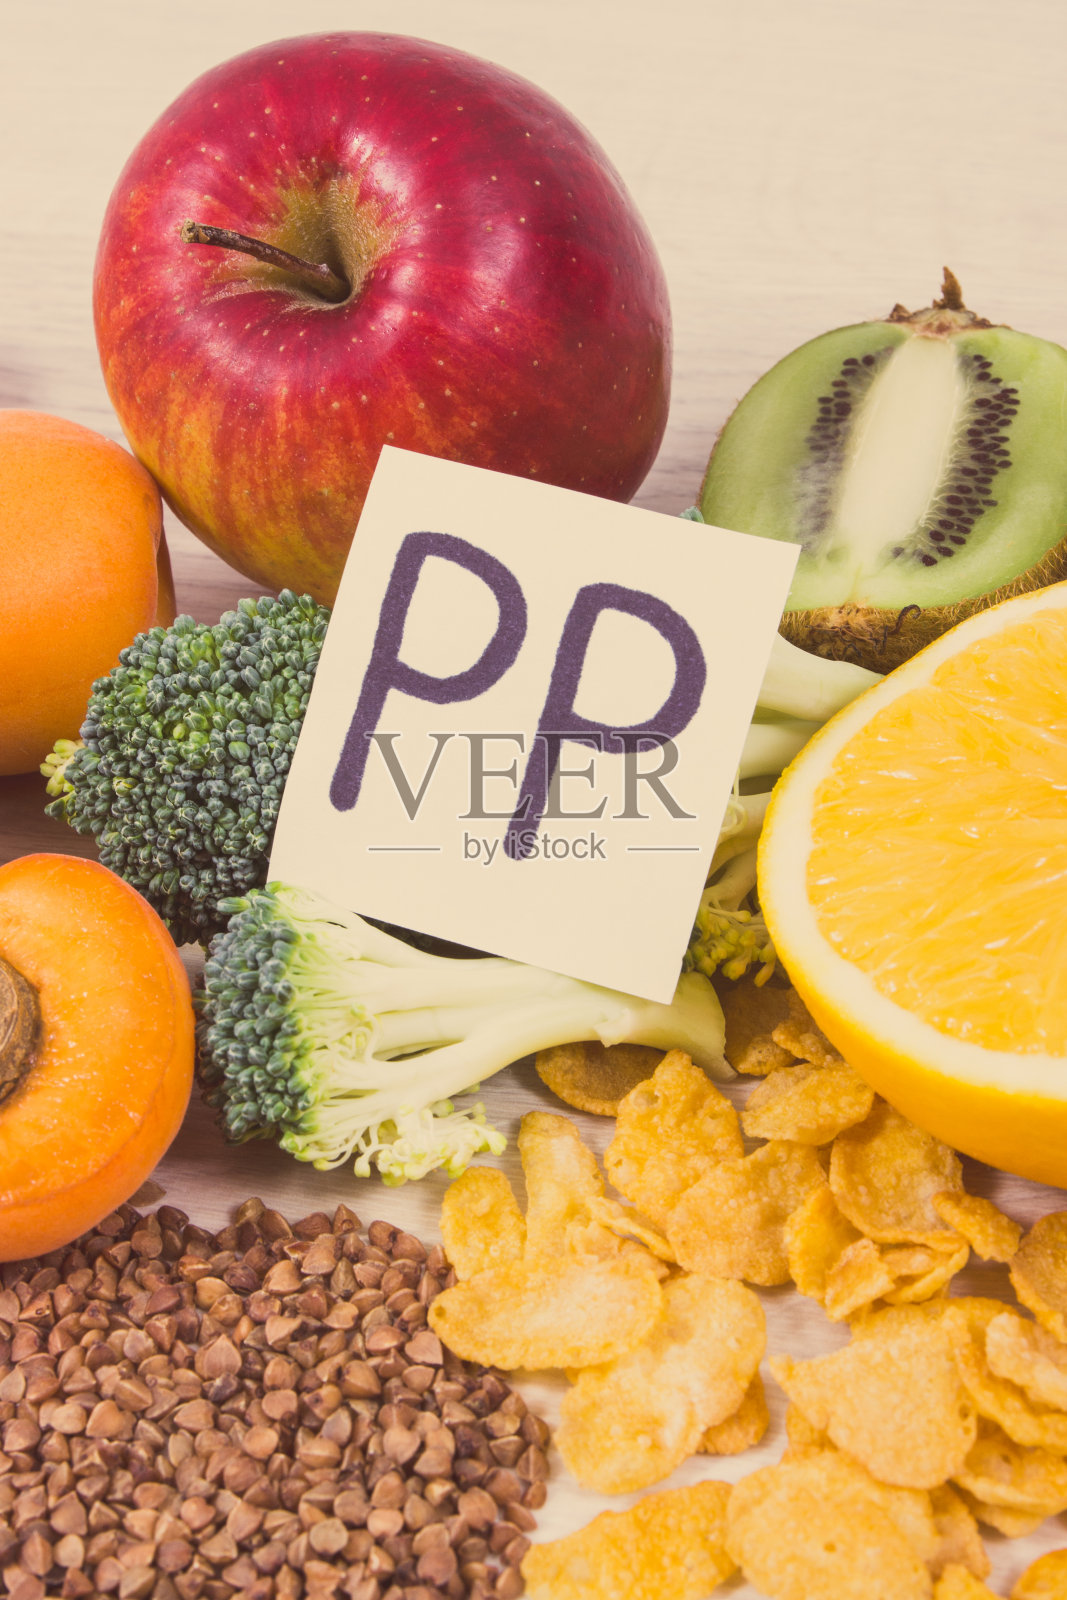 天然矿物质、维生素PP、维生素B3和膳食纤维为健康营养食品。的照片照片摄影图片